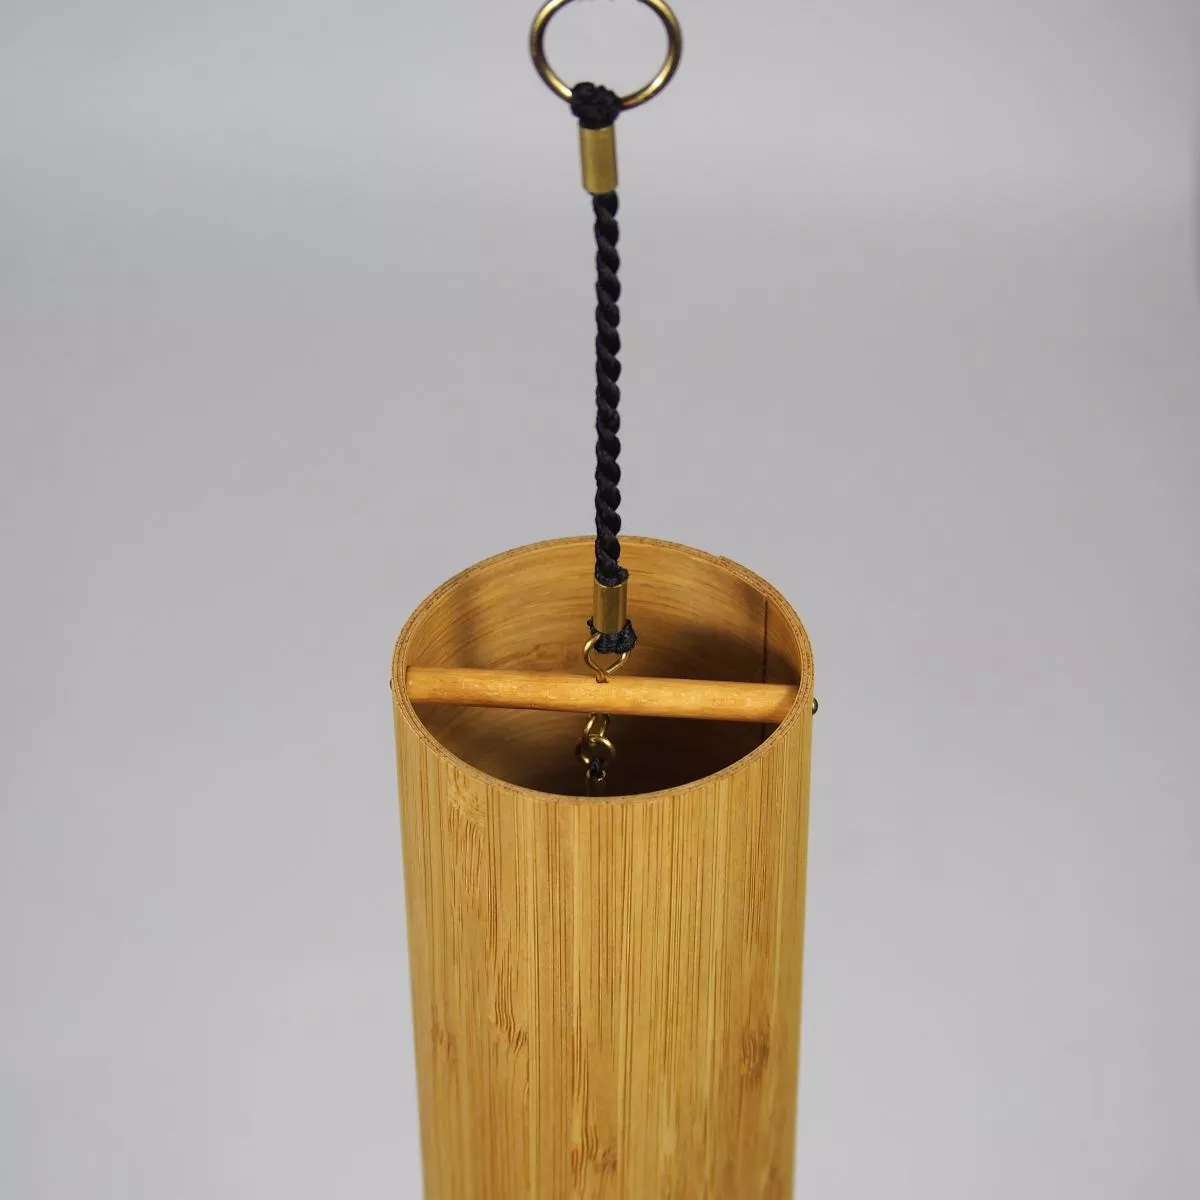 Handgefertigtes Klangspiel "Ignis" im Bambus-Zylinder